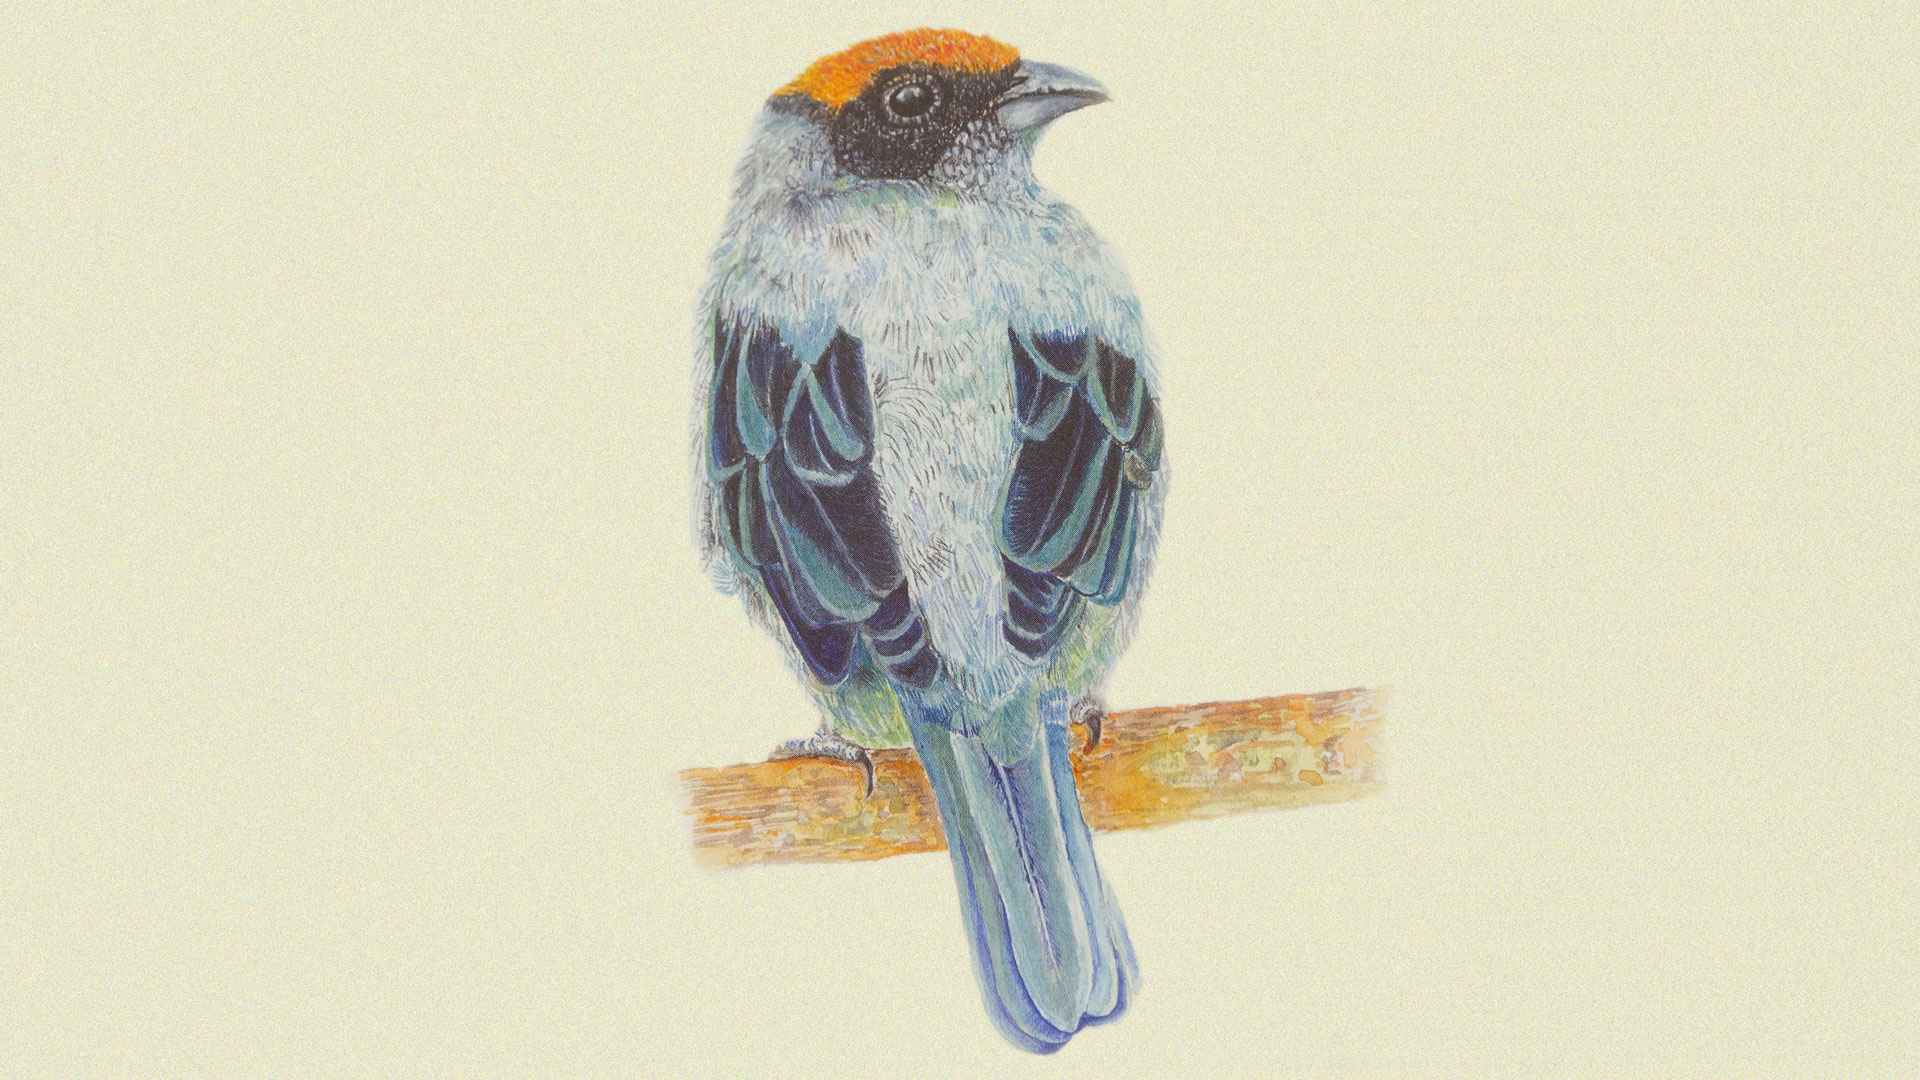 La Guía ilustrada de las aves de la Universidad de los Andes premiada por Andigraf